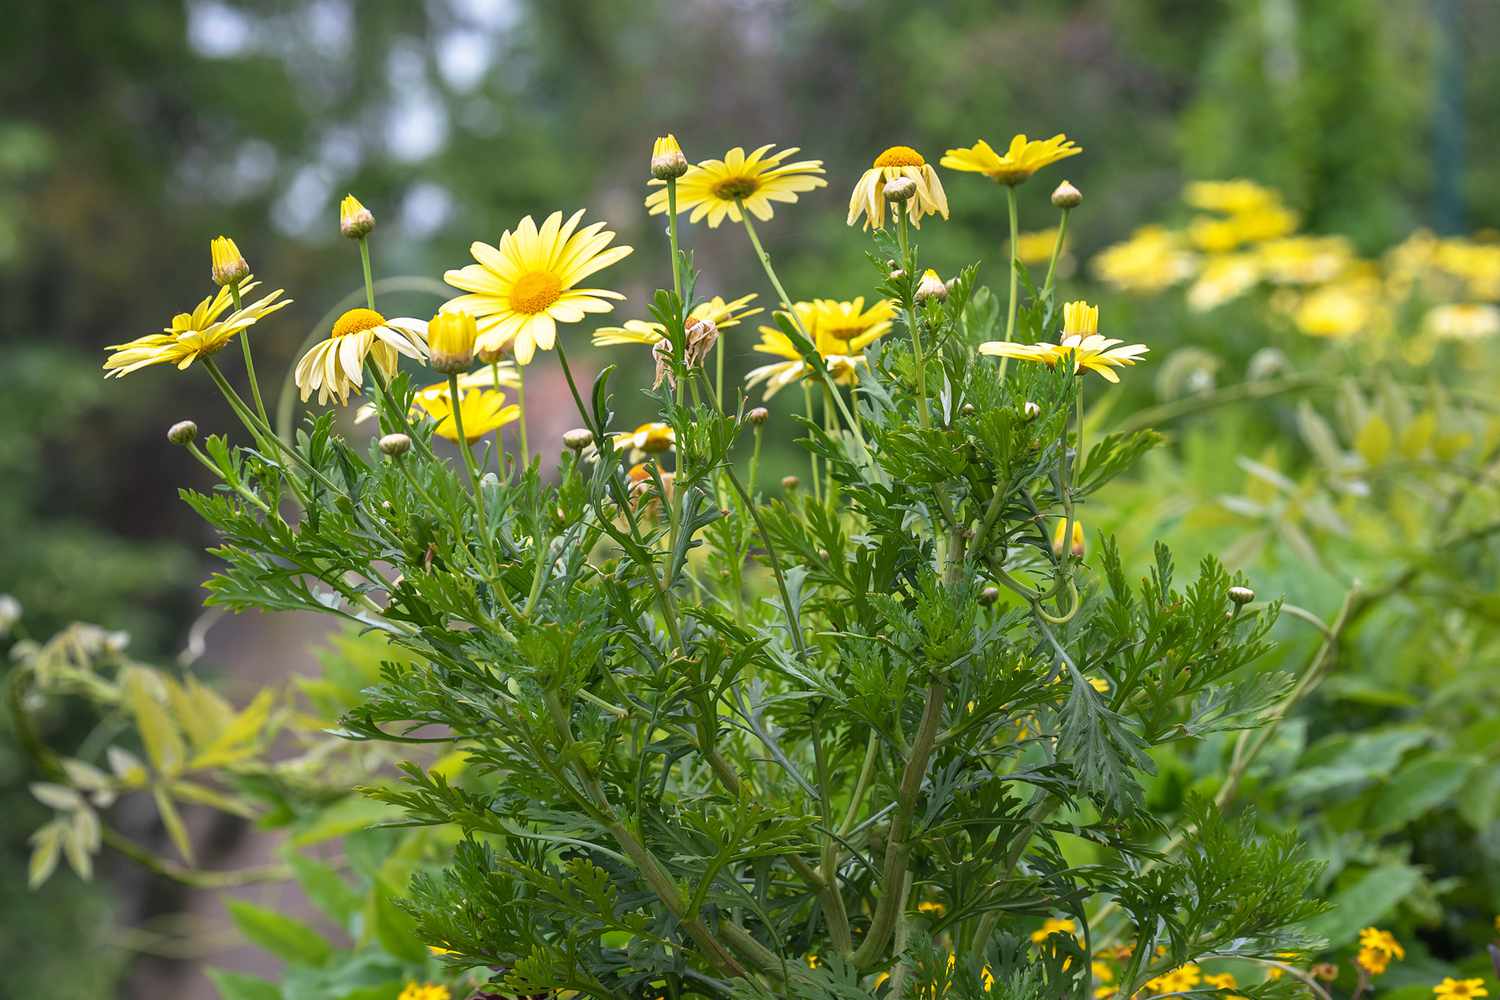 Kronenblume gelbe Blüten und Knospen an dünnen Stielen mit gezackten Blättern